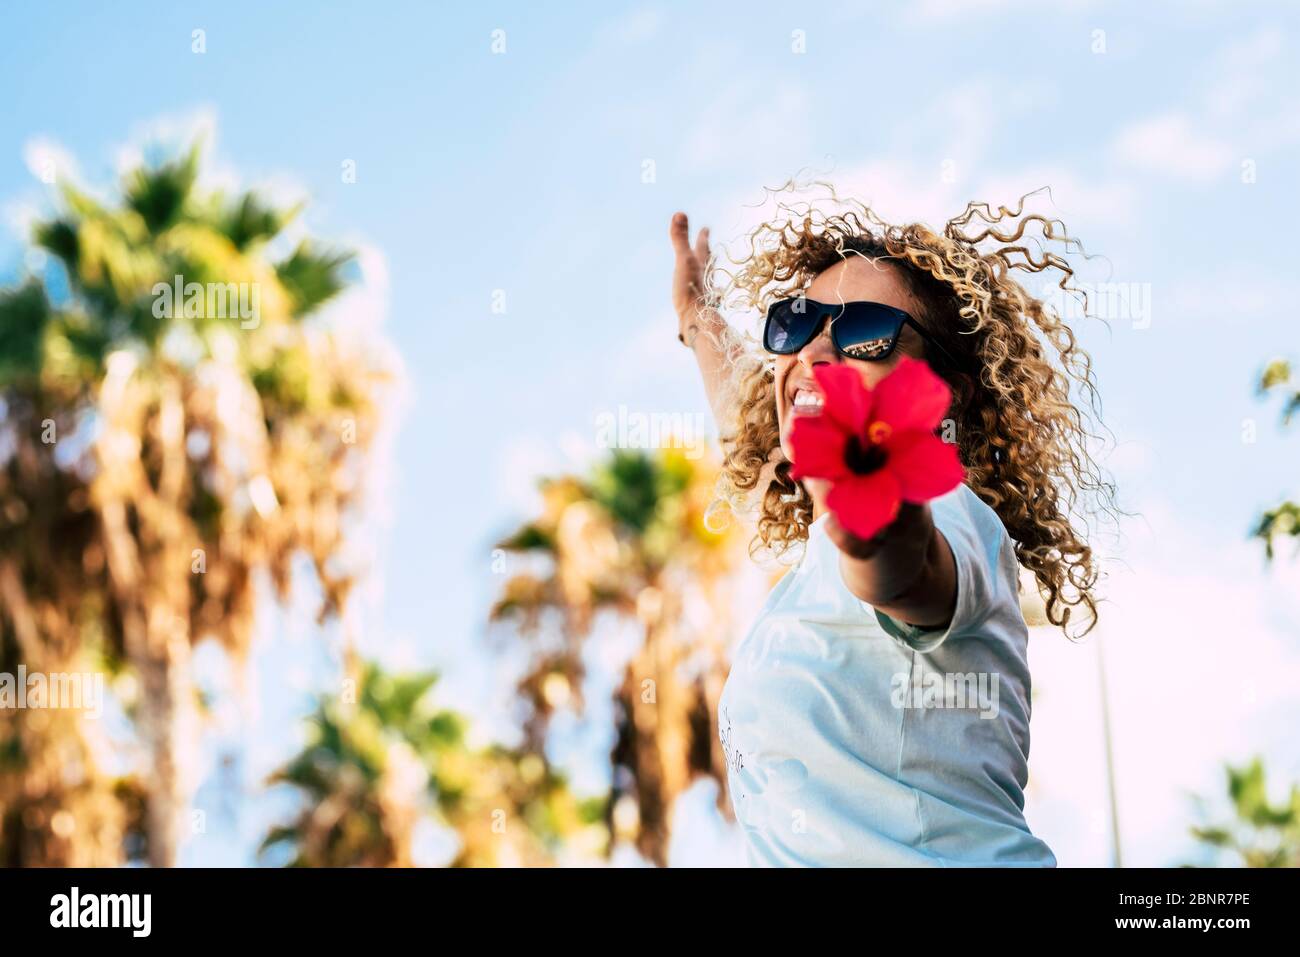 Felicità e fiori rossi - primavera stagione andhapy persone in attività di svago all'aperto - biondo curly bella gente donna adulta saltando e mostrando un grande fiori rossi alla fotocamera Foto Stock